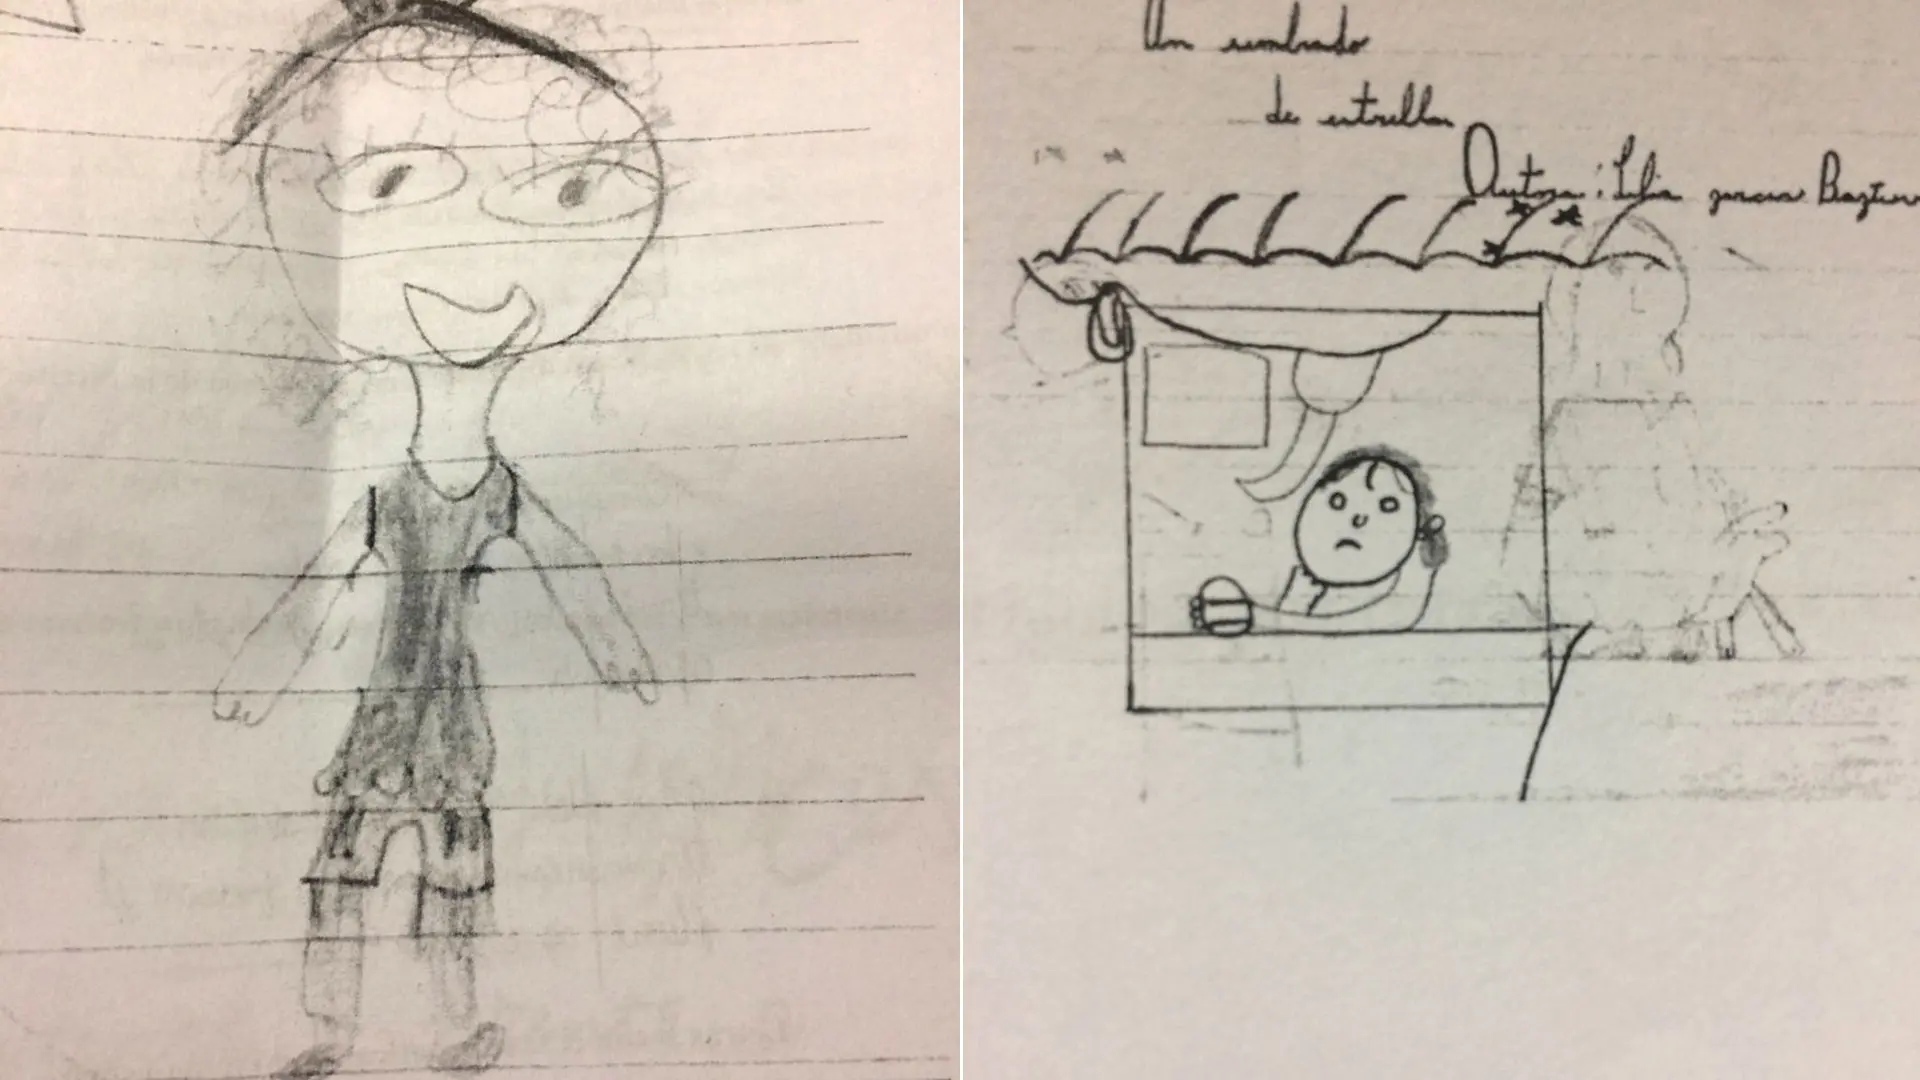 psicologia infantil dibujos abusos - Cómo identificar el perfil psicológico en un caso de abuso infantil